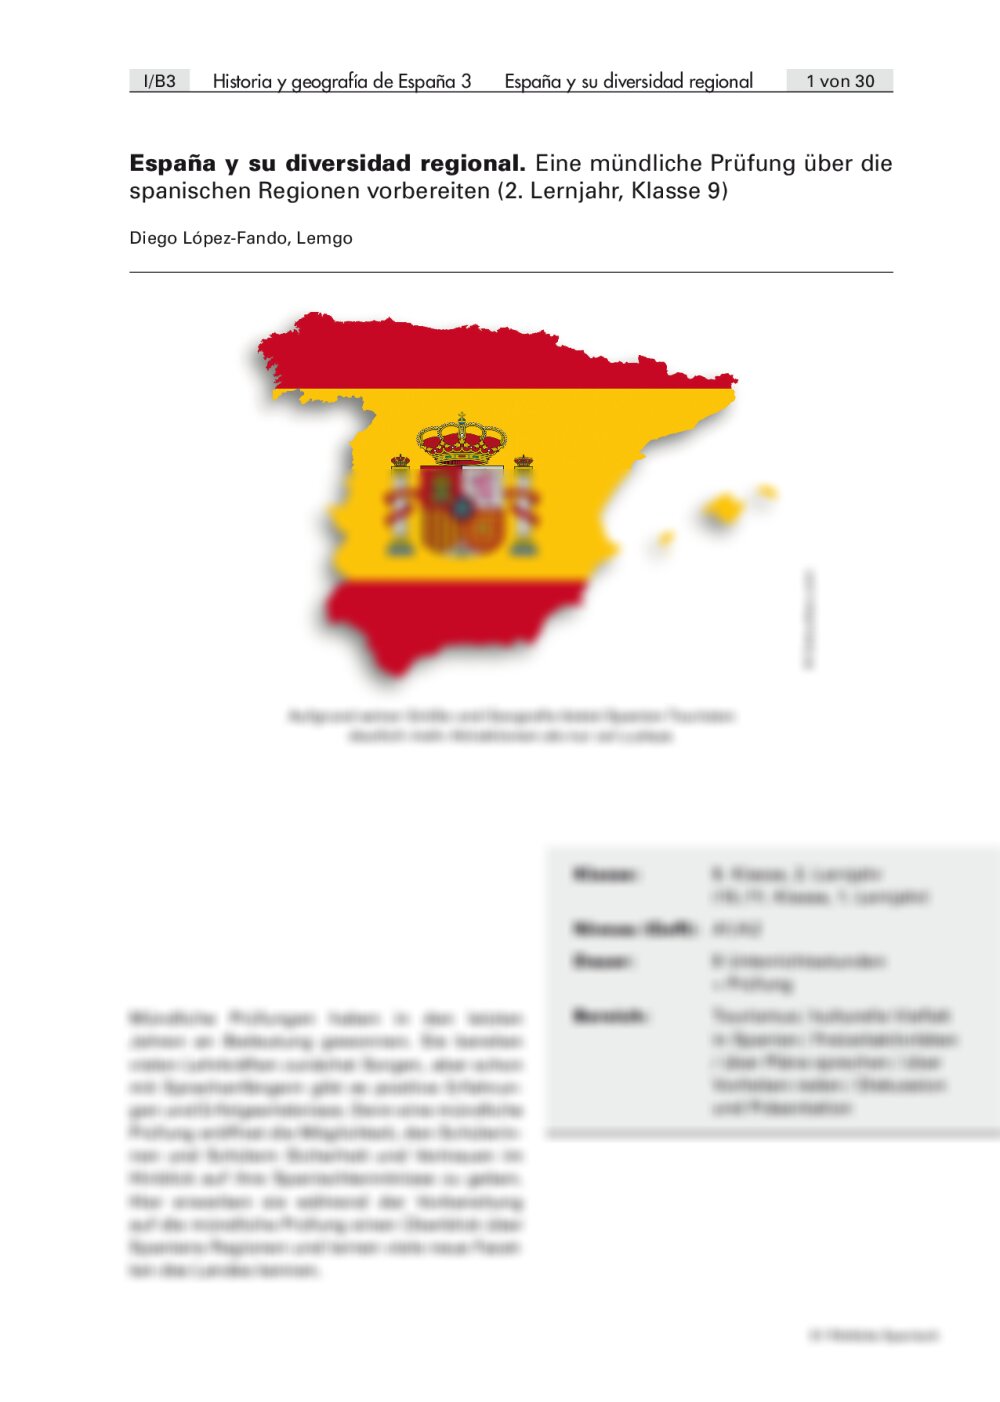 Eine mündliche Prüfung über die spanischen Regionen vorbereiten - Seite 1